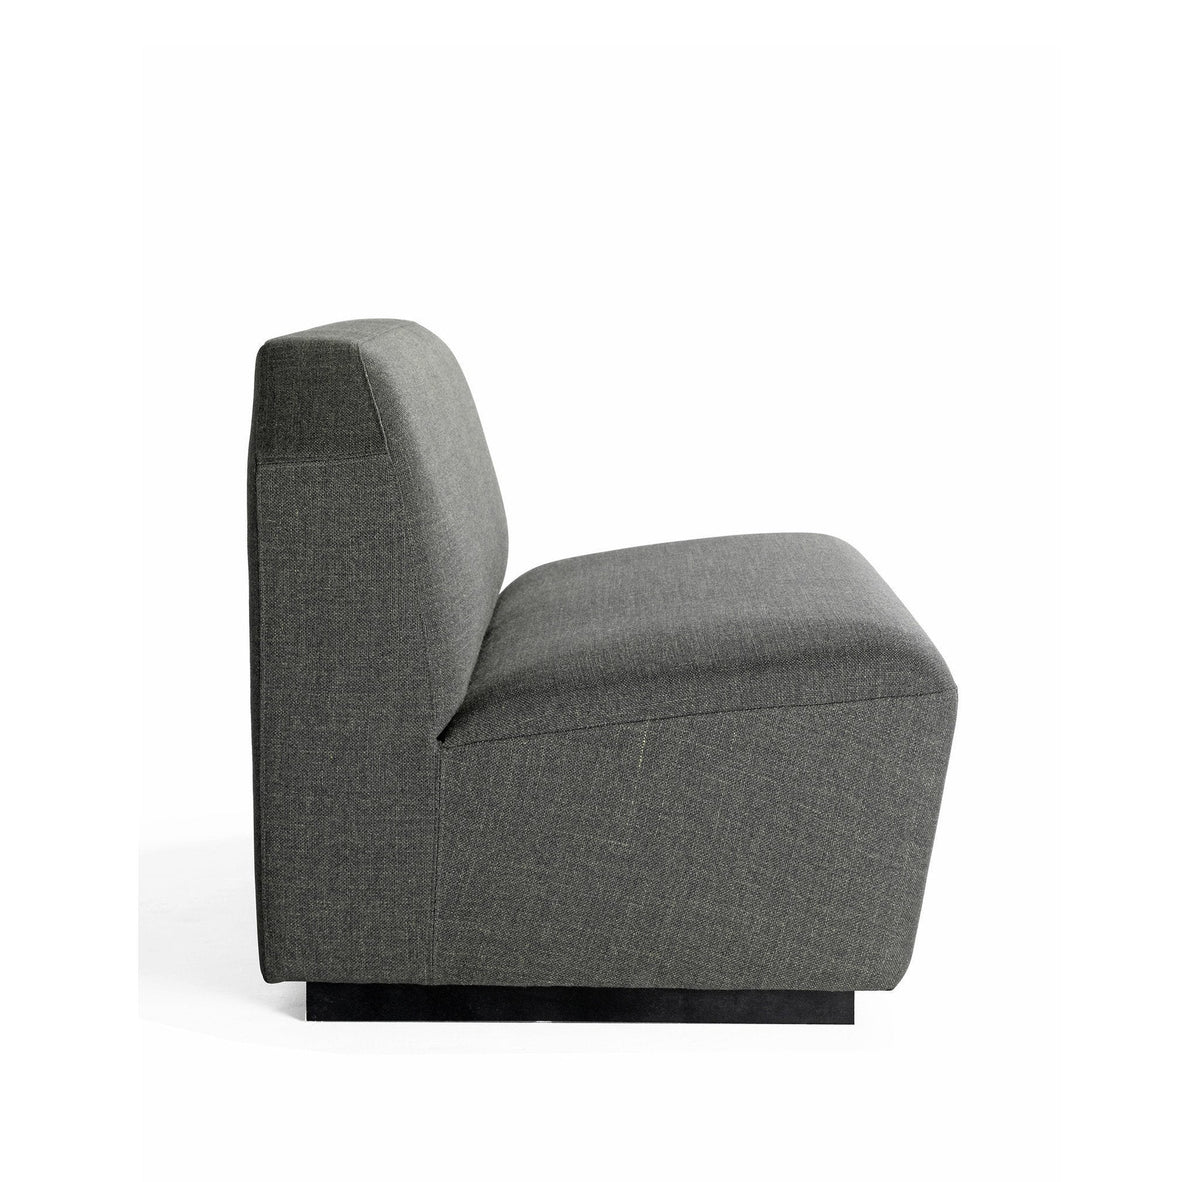 Cumulus 2S Modular Sofa Unit-Mitab-Contract Furniture Store